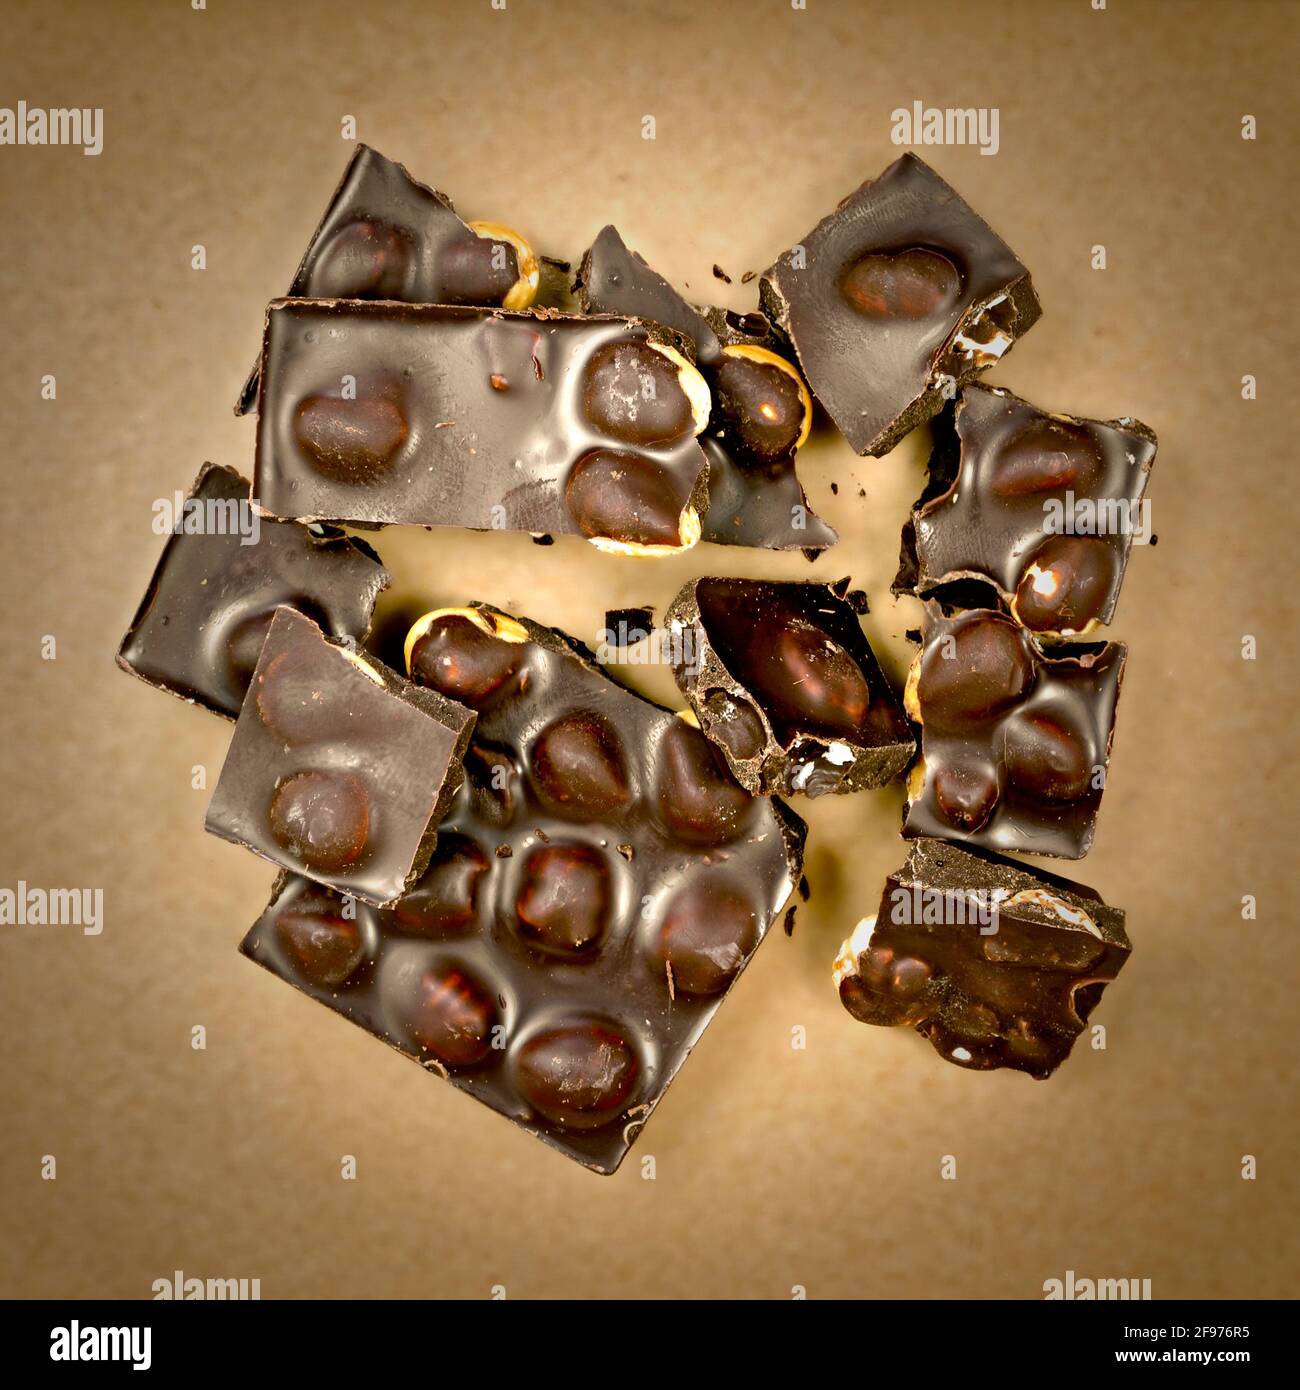 frammenti di cioccolato fondente con nocciole intere Foto Stock